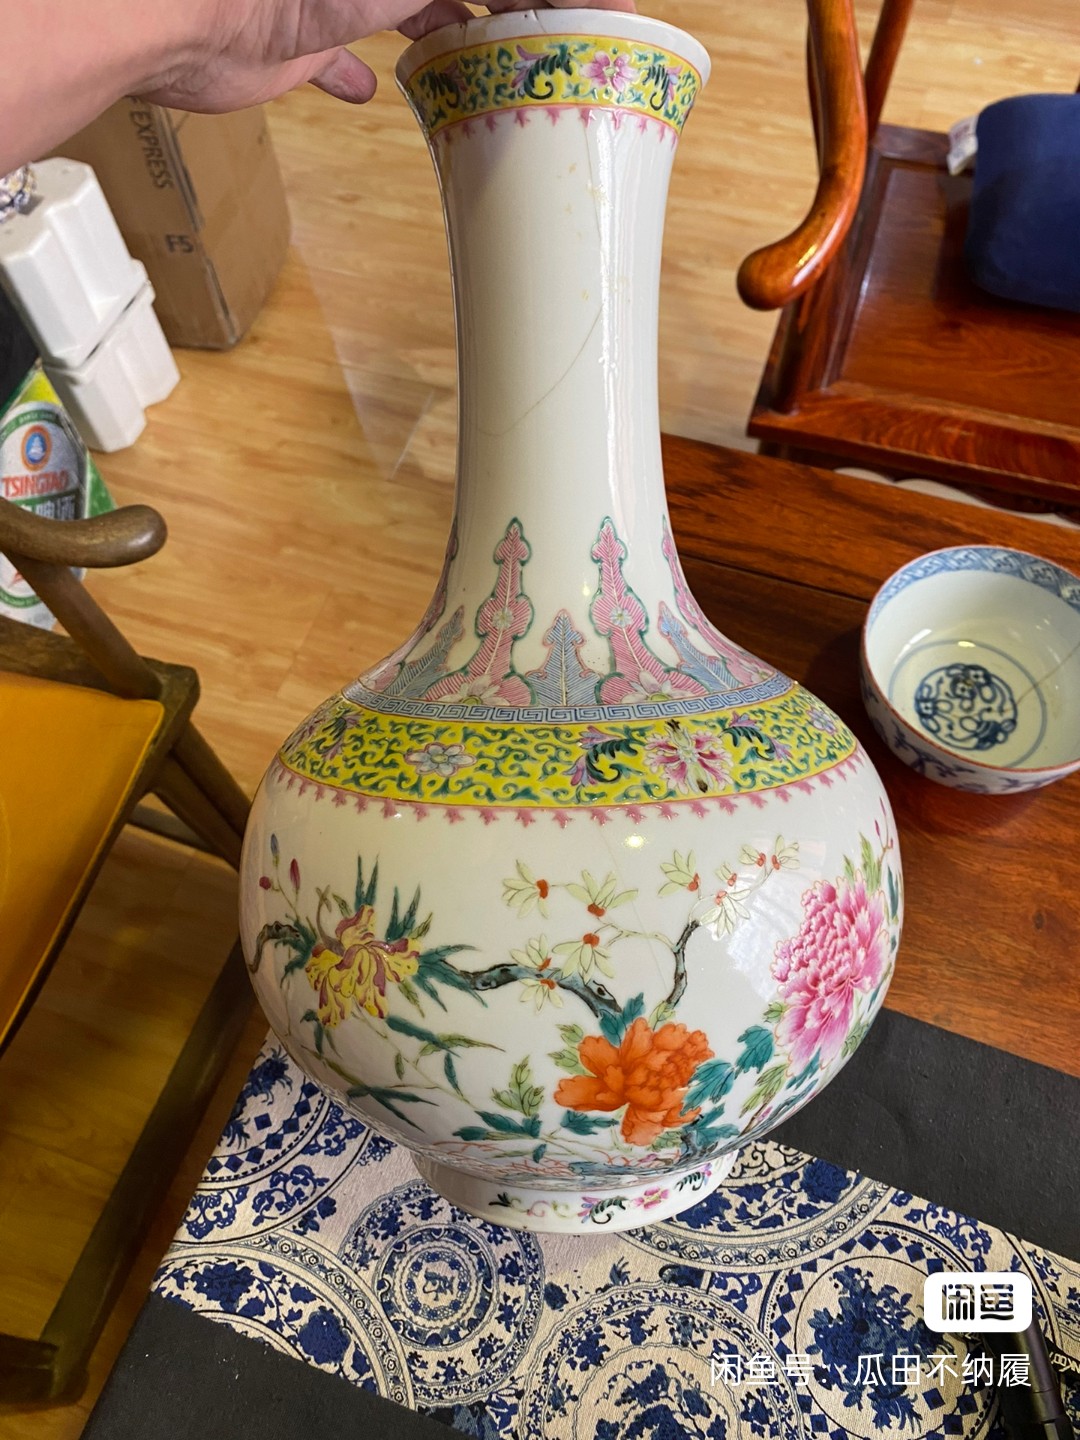 売れ筋ランキング 高価な中国製の少し古い花瓶だと思います